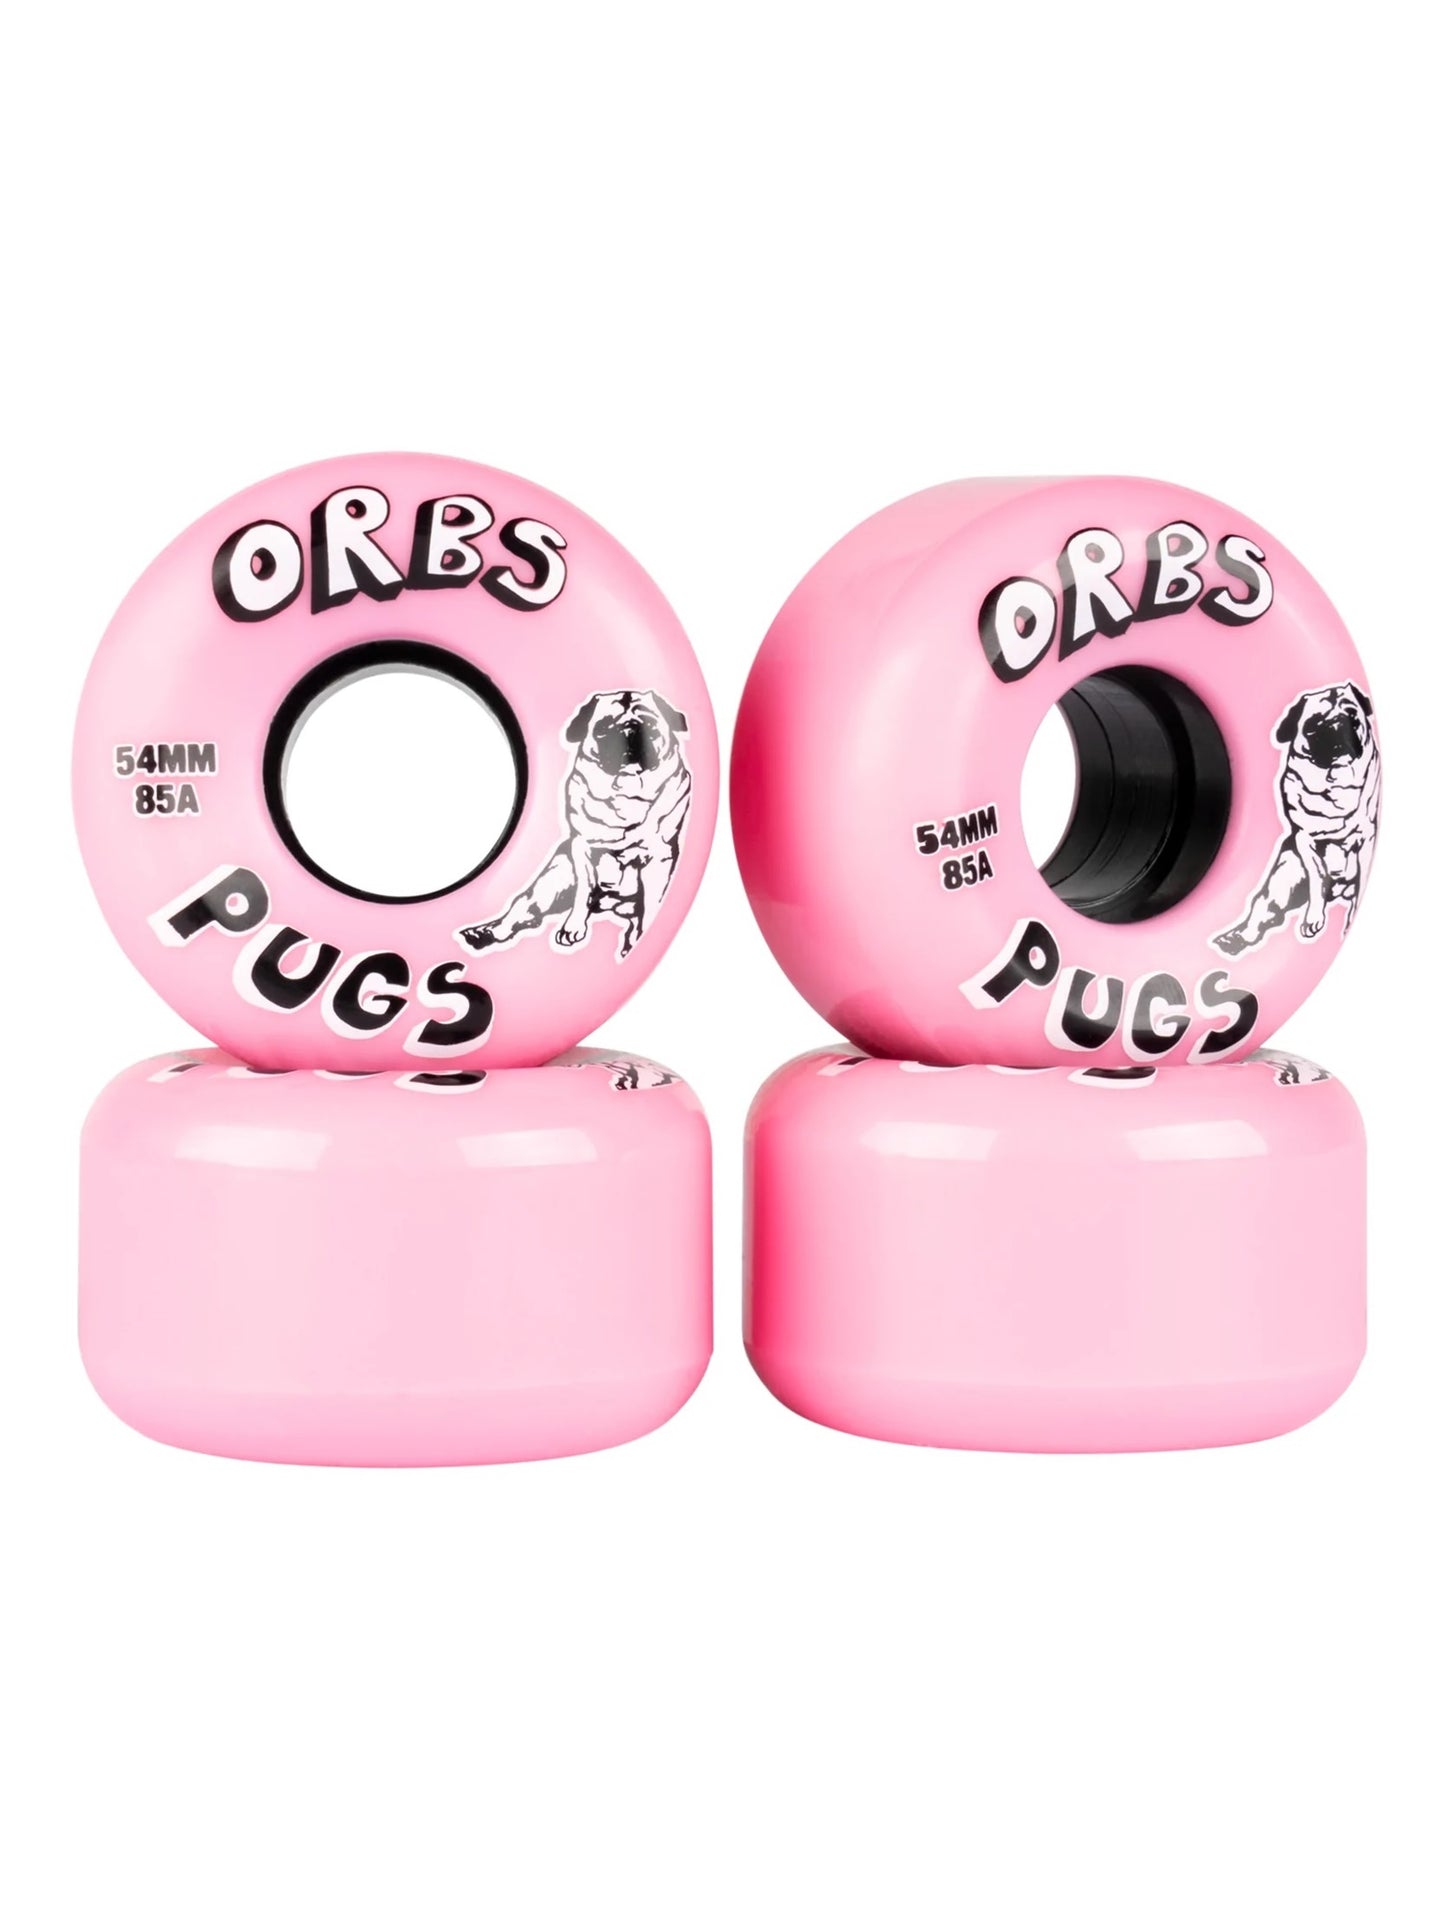 ORBS Pugs Wheels 54mm - Pink